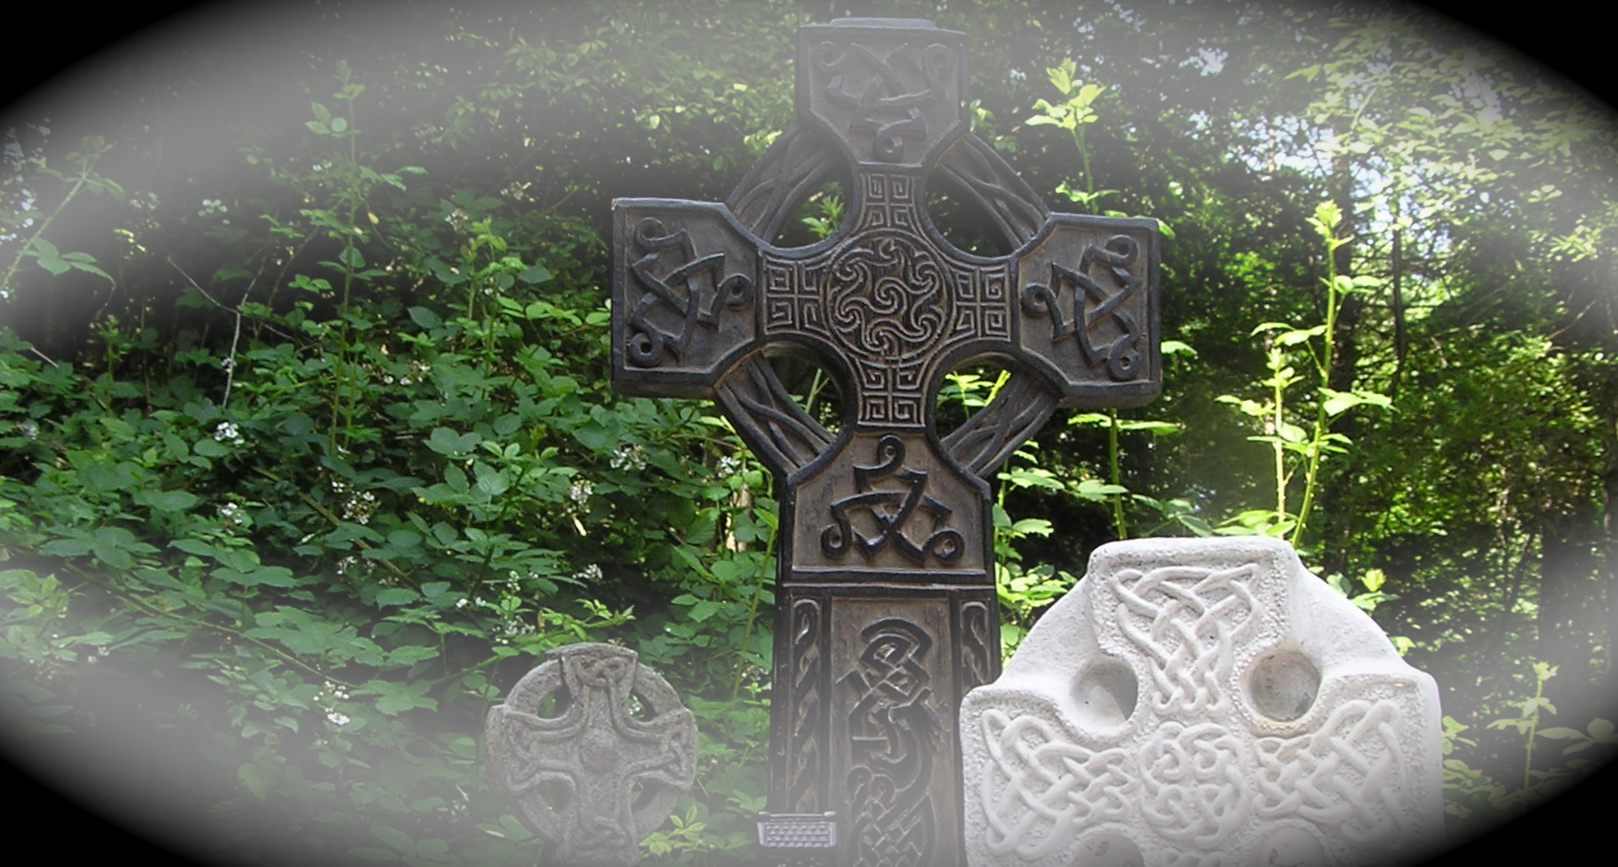 Celtic crosses